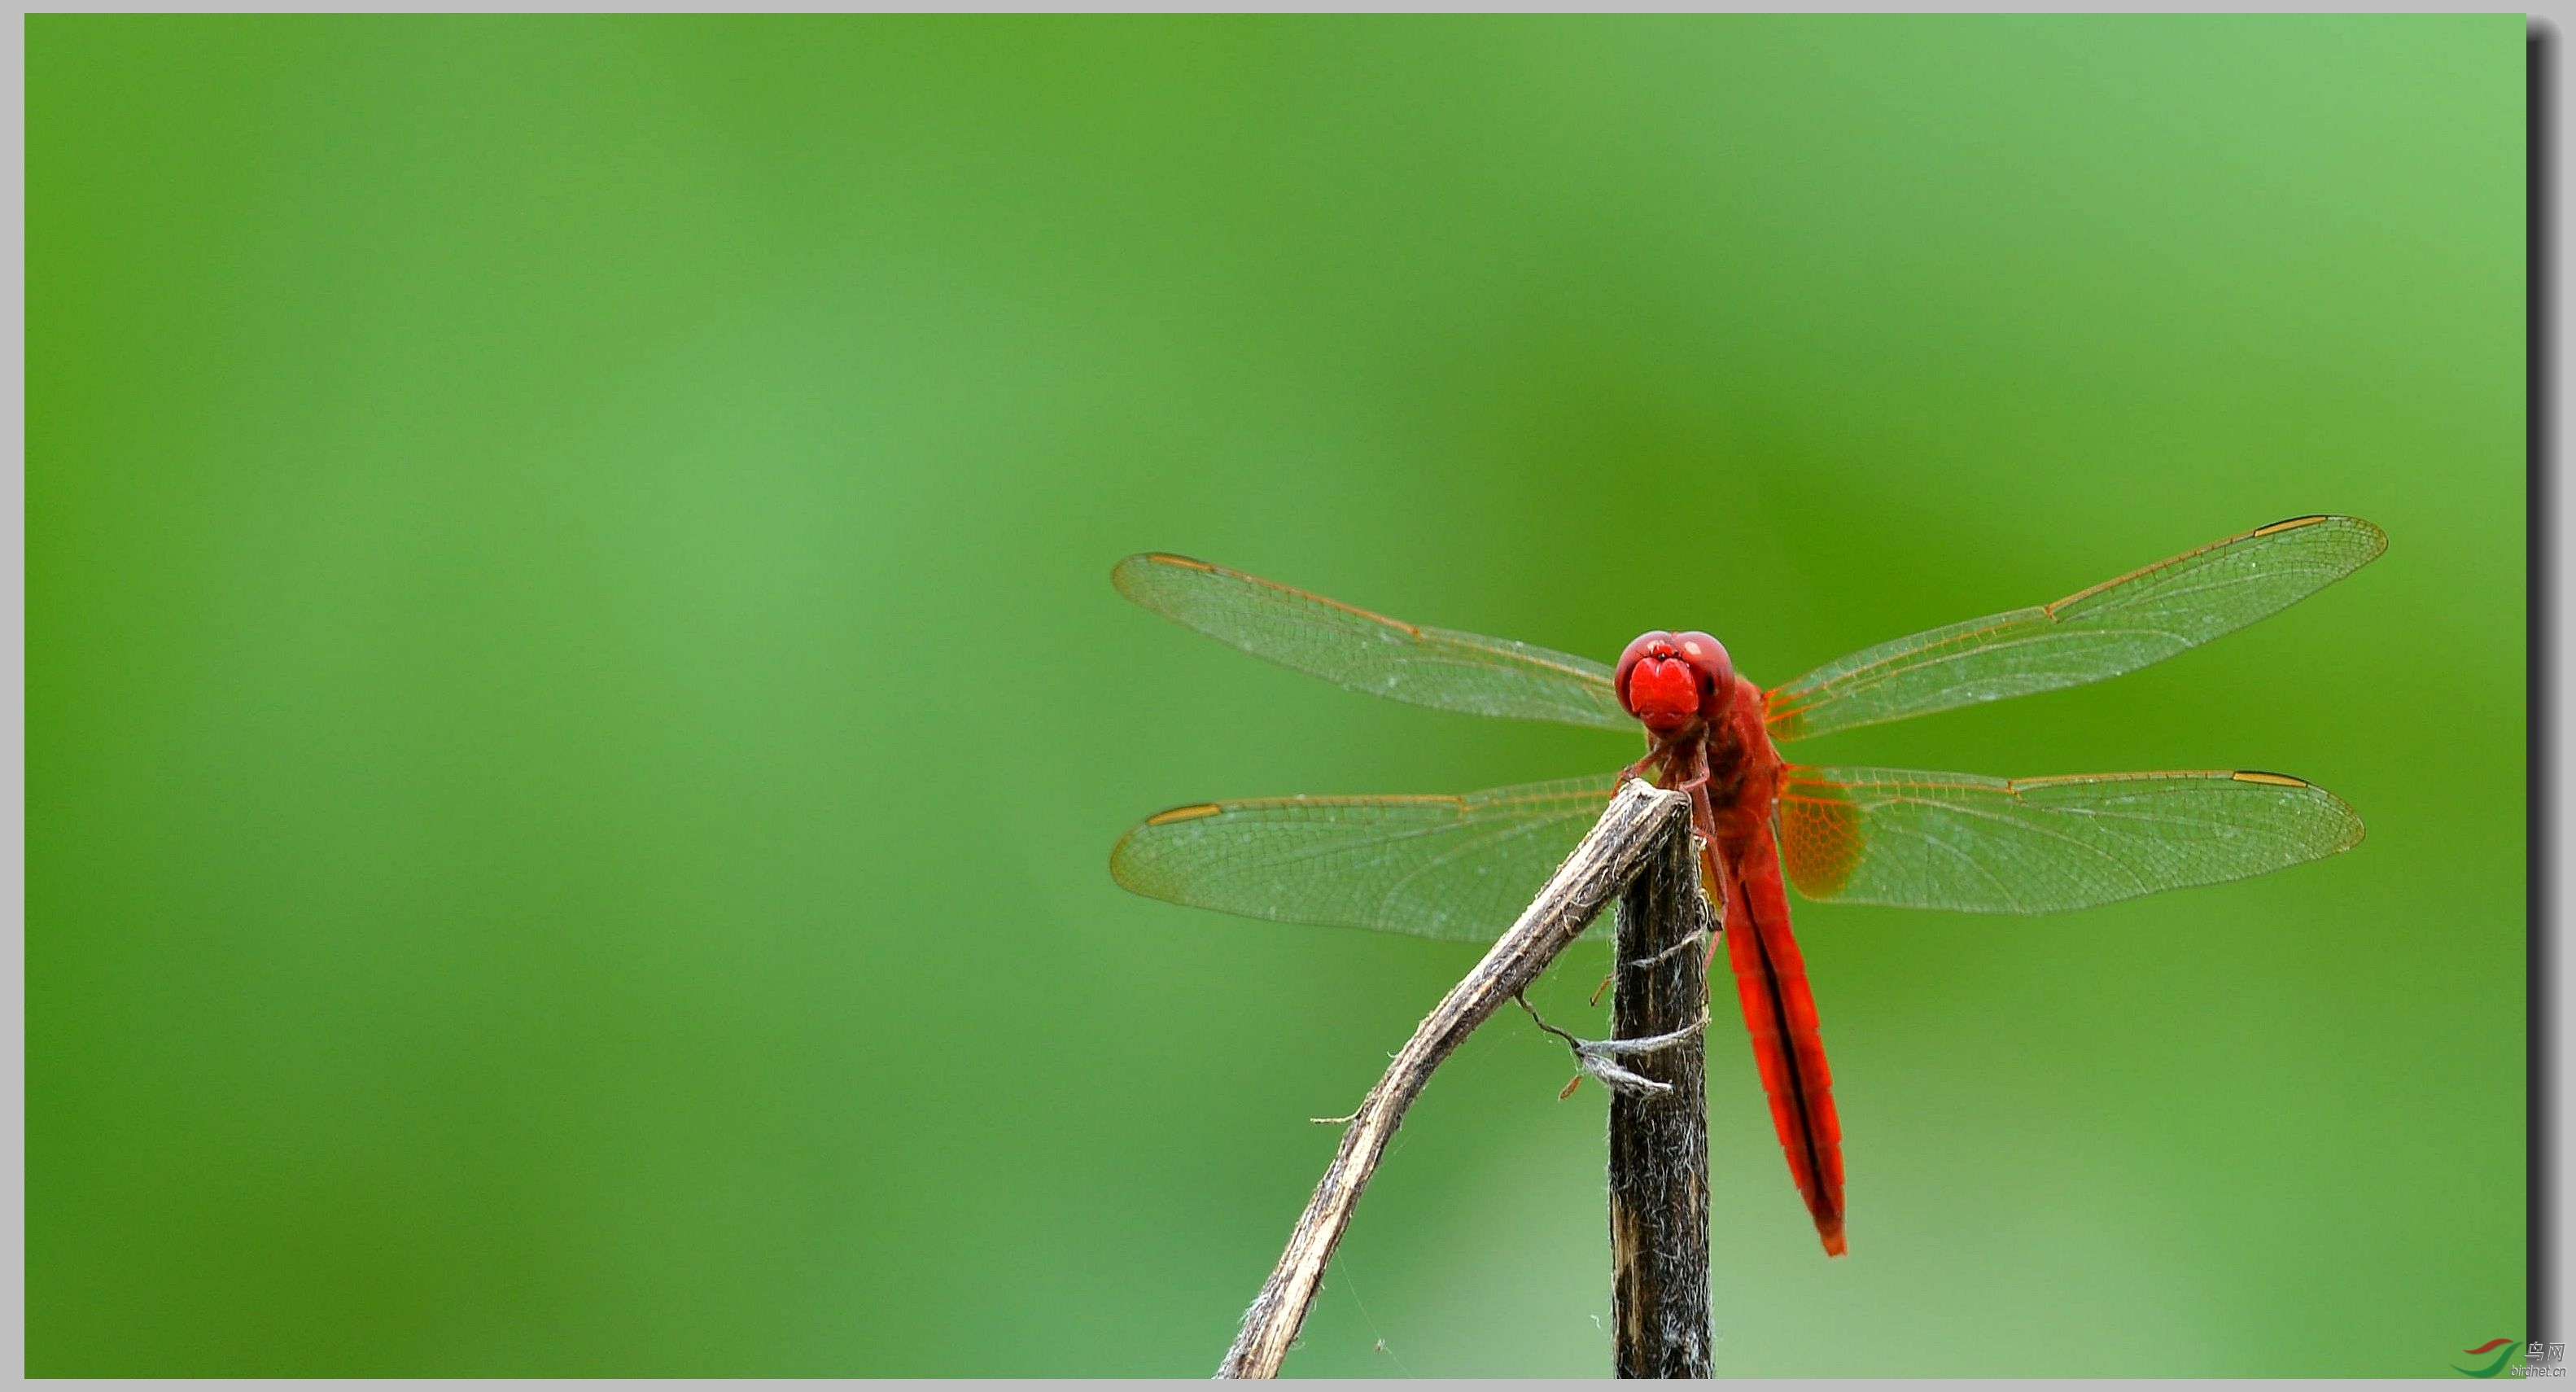 有意思的几张蜻蜓片 - 昆虫视界 Insects 鸟网